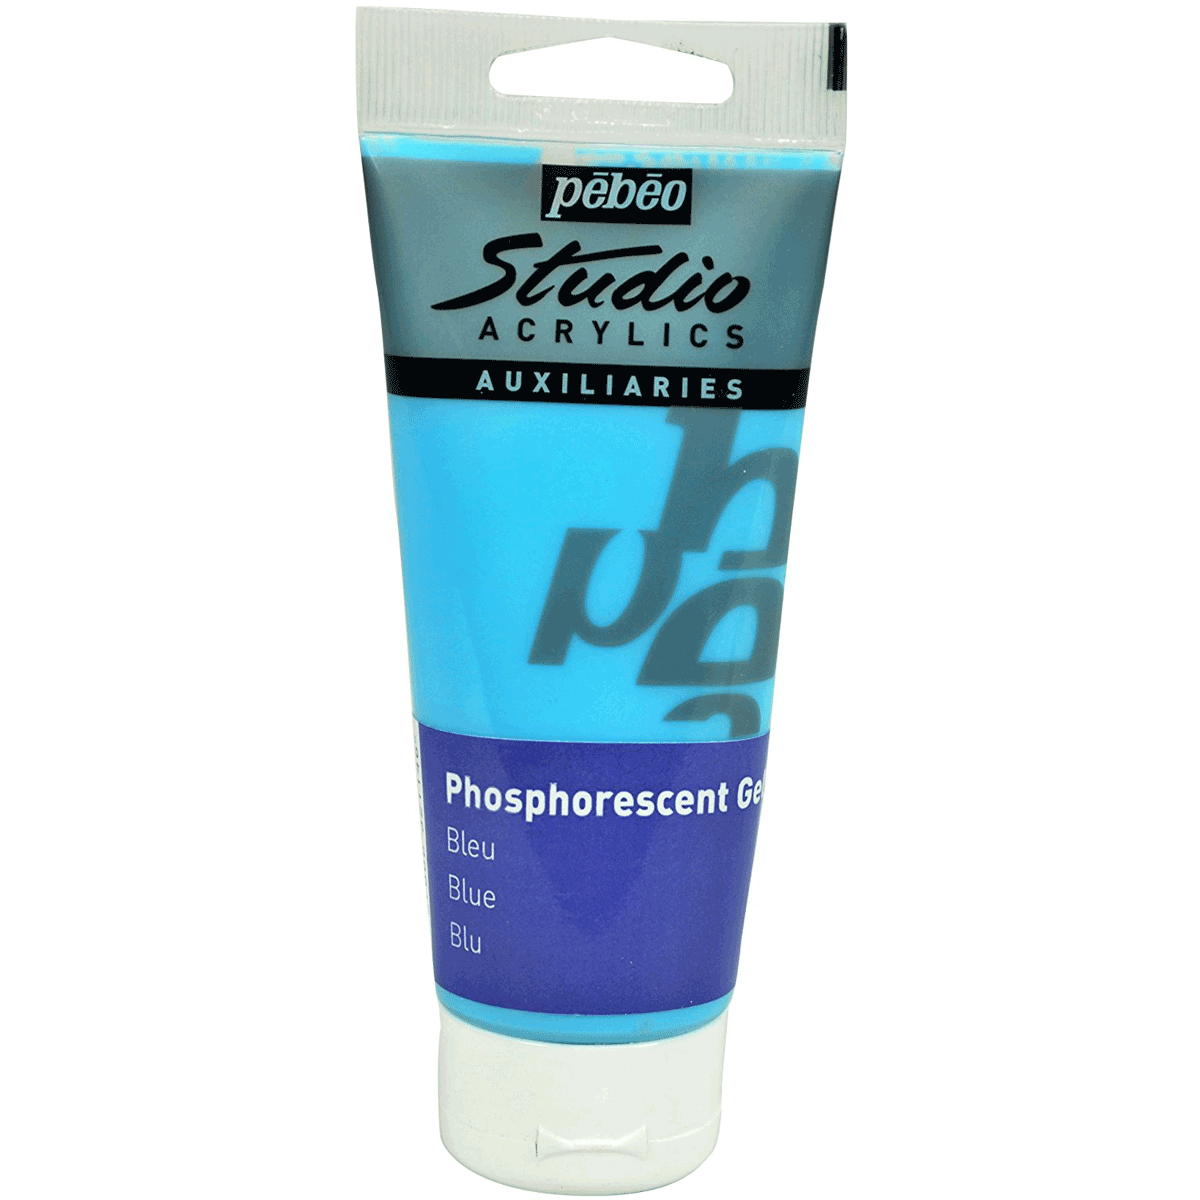 Pébéo Studio Acrylics Auxiliaries Phosphorescent Gel - Blue 100 ml